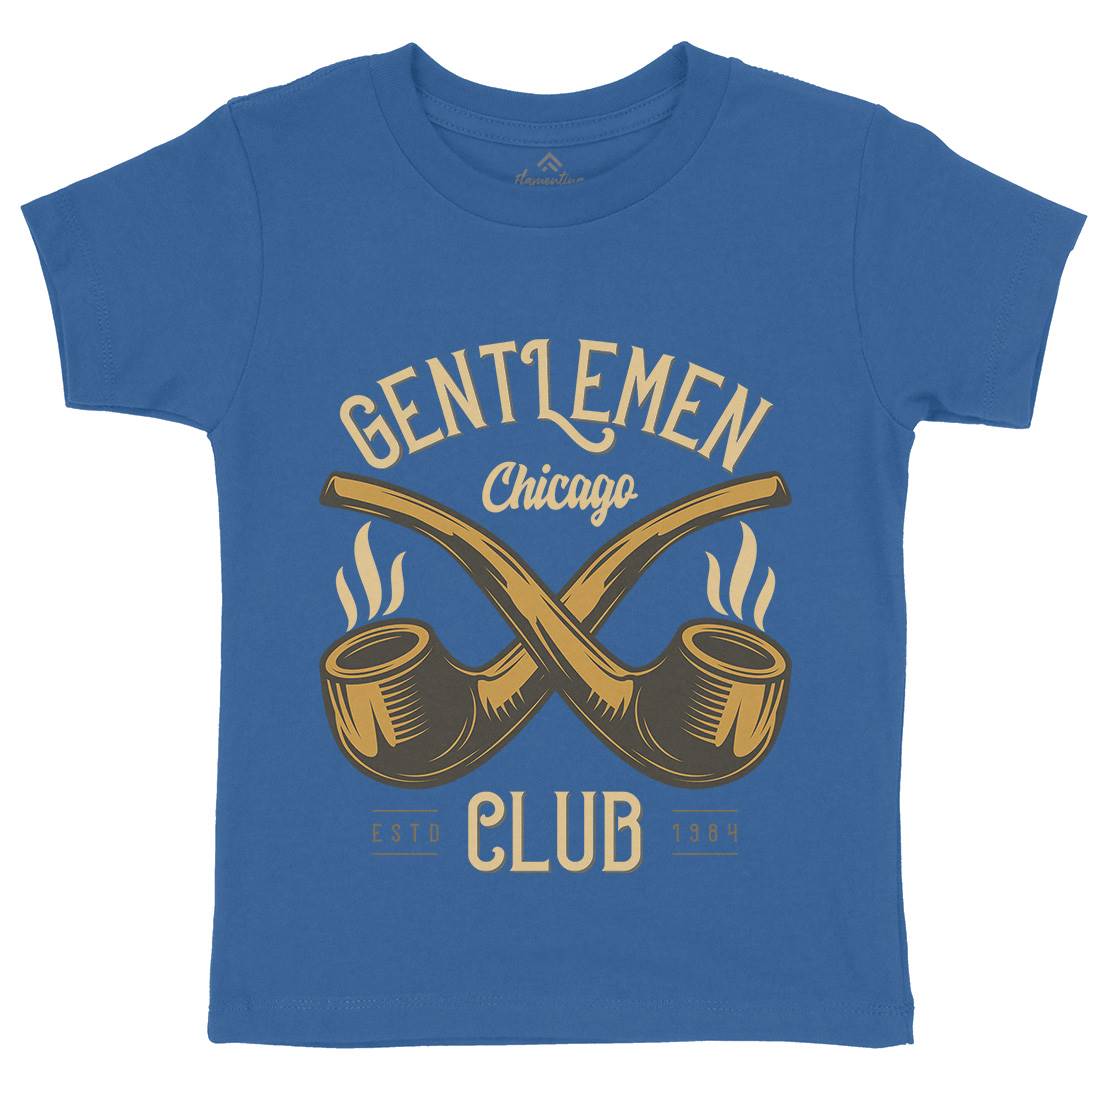 Gentlemen Club Kids Organic Crew Neck T-Shirt Barber C850